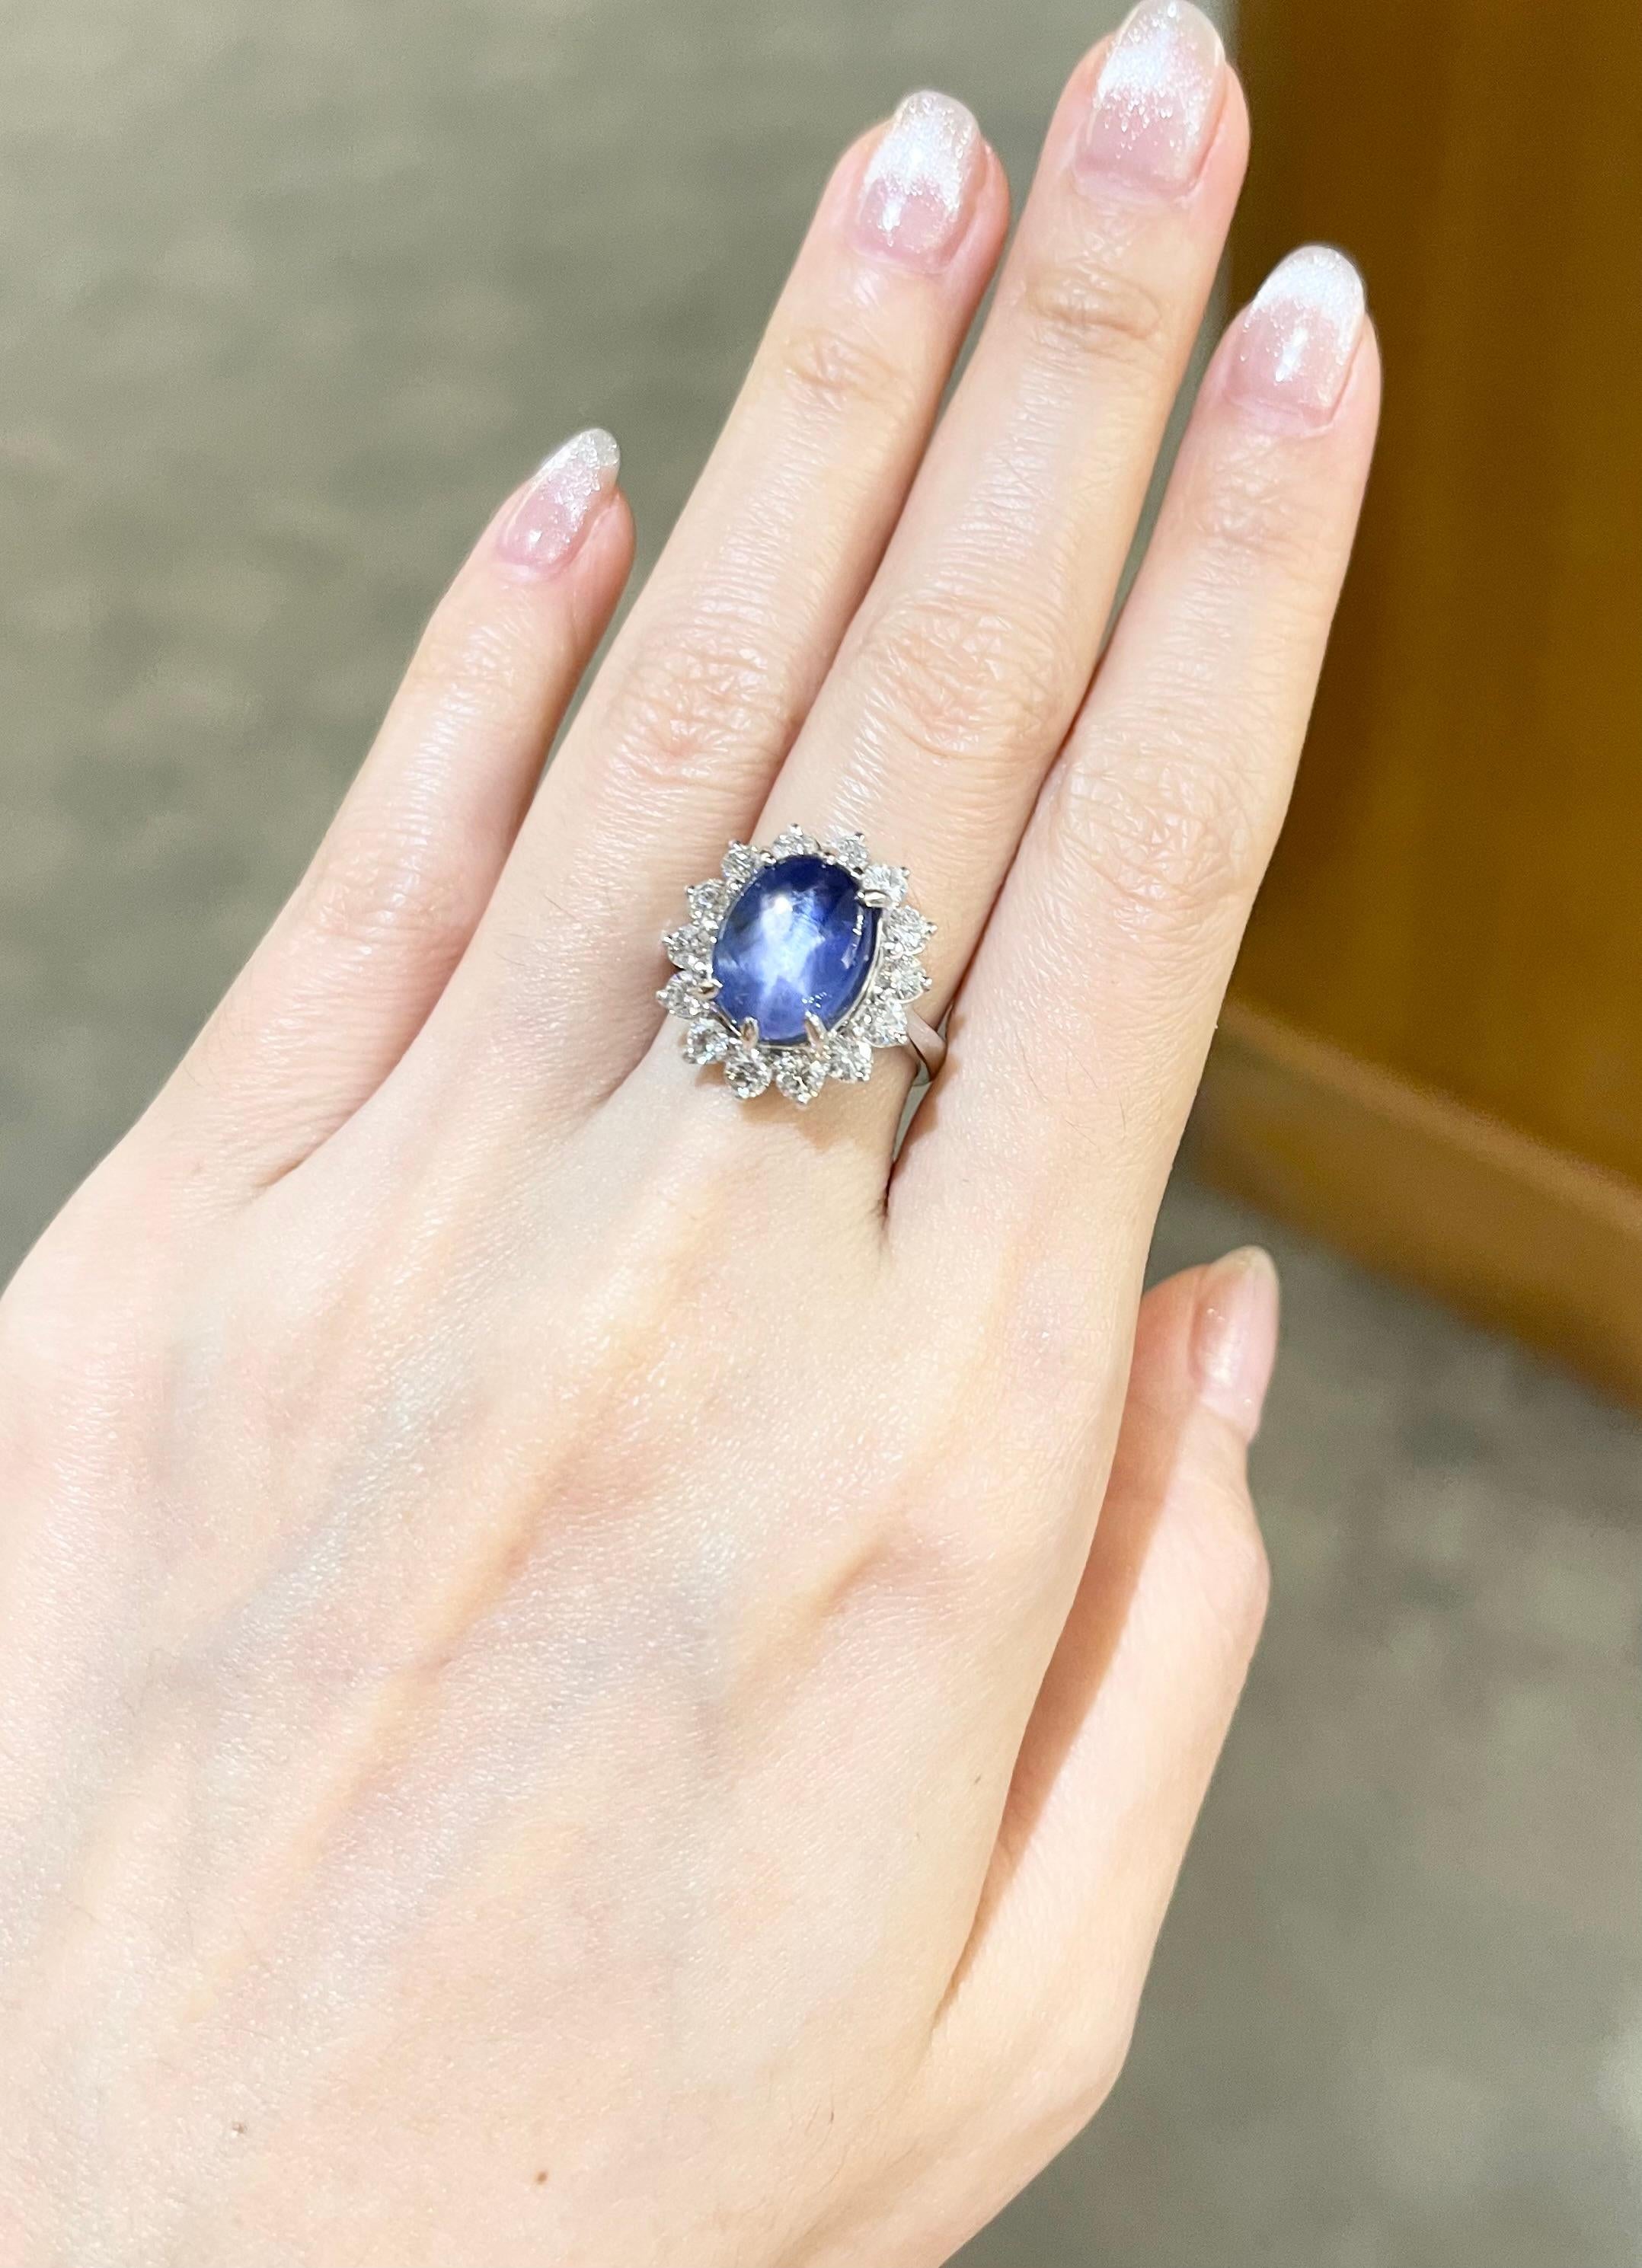 Saphir bleu étoilé 4,63 carats et diamant 1,30 carat Bague en or blanc 18 carats

Largeur :  1,7 cm 
Longueur : 2.0 cm
Taille de l'anneau : 51
Poids total : 9,12 grammes

